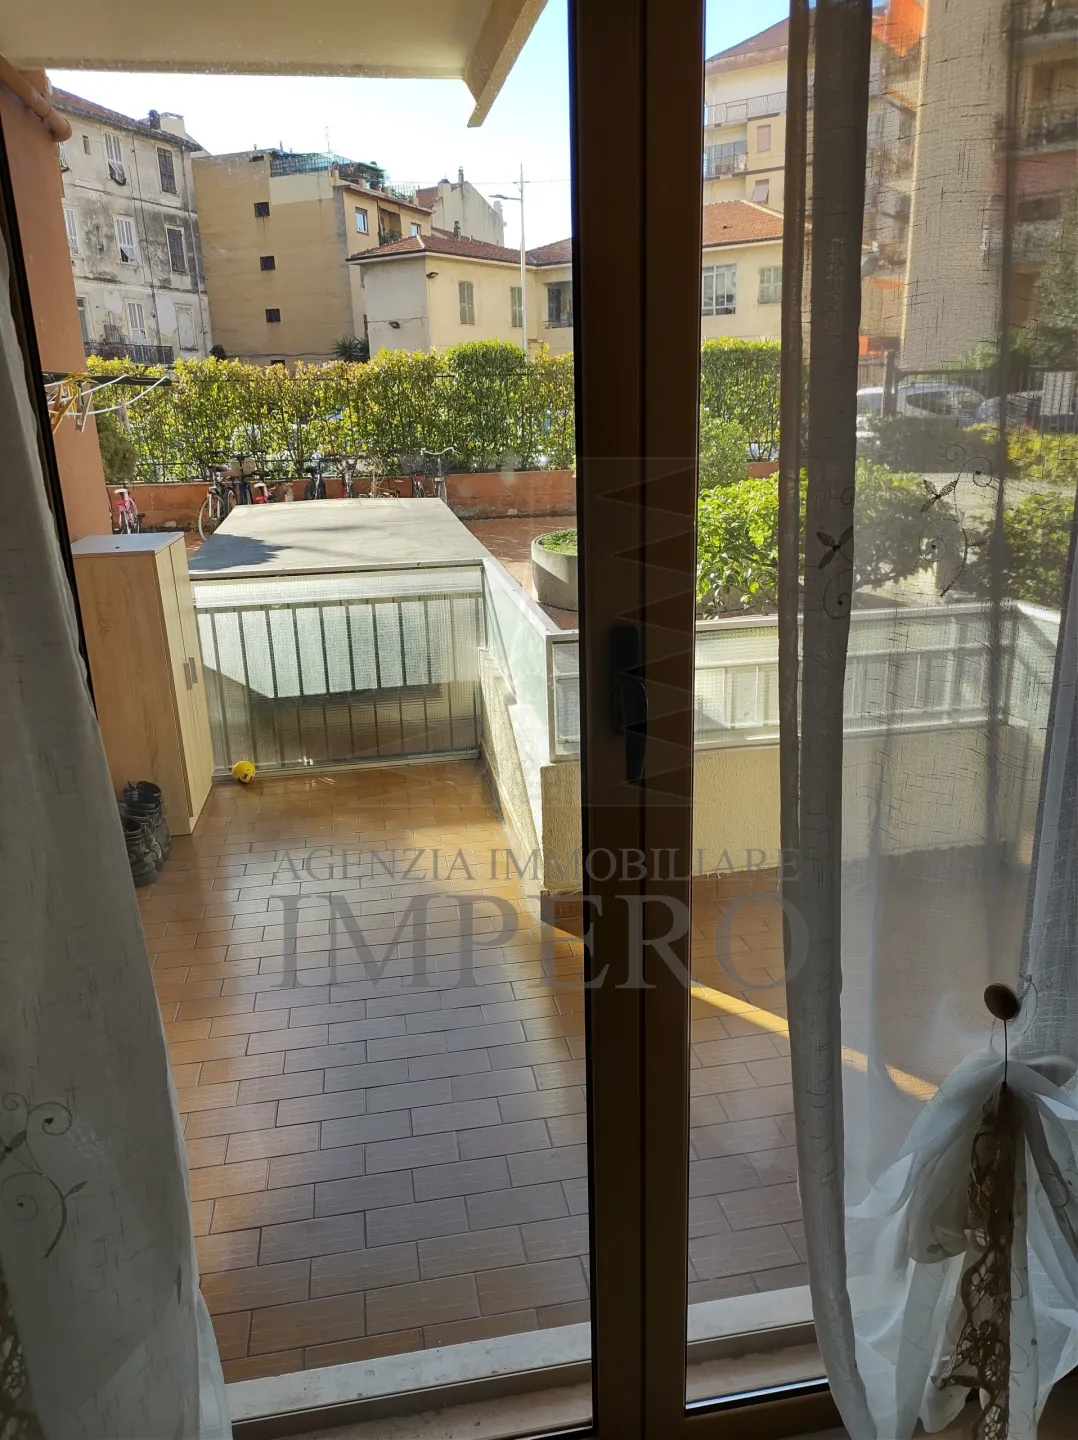 Immagine per Trilocale in vendita a Ventimiglia via San Secondo 15